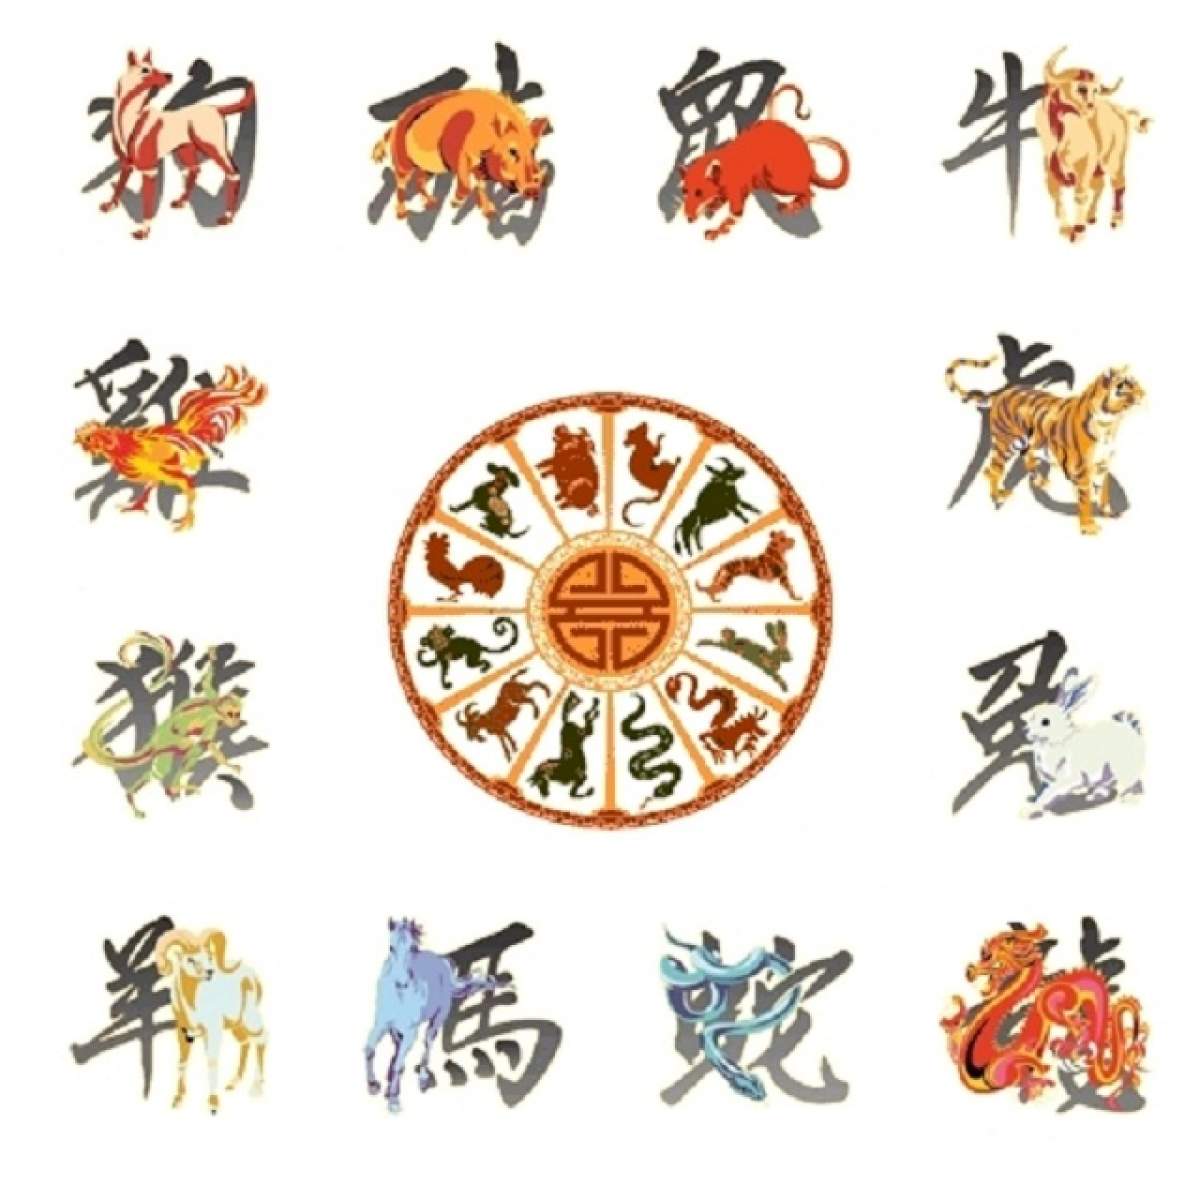 Horoscopul pe care îl aştepta toată România! Ce zodie chinezească eşti? Află tot despre luna iunie 2015